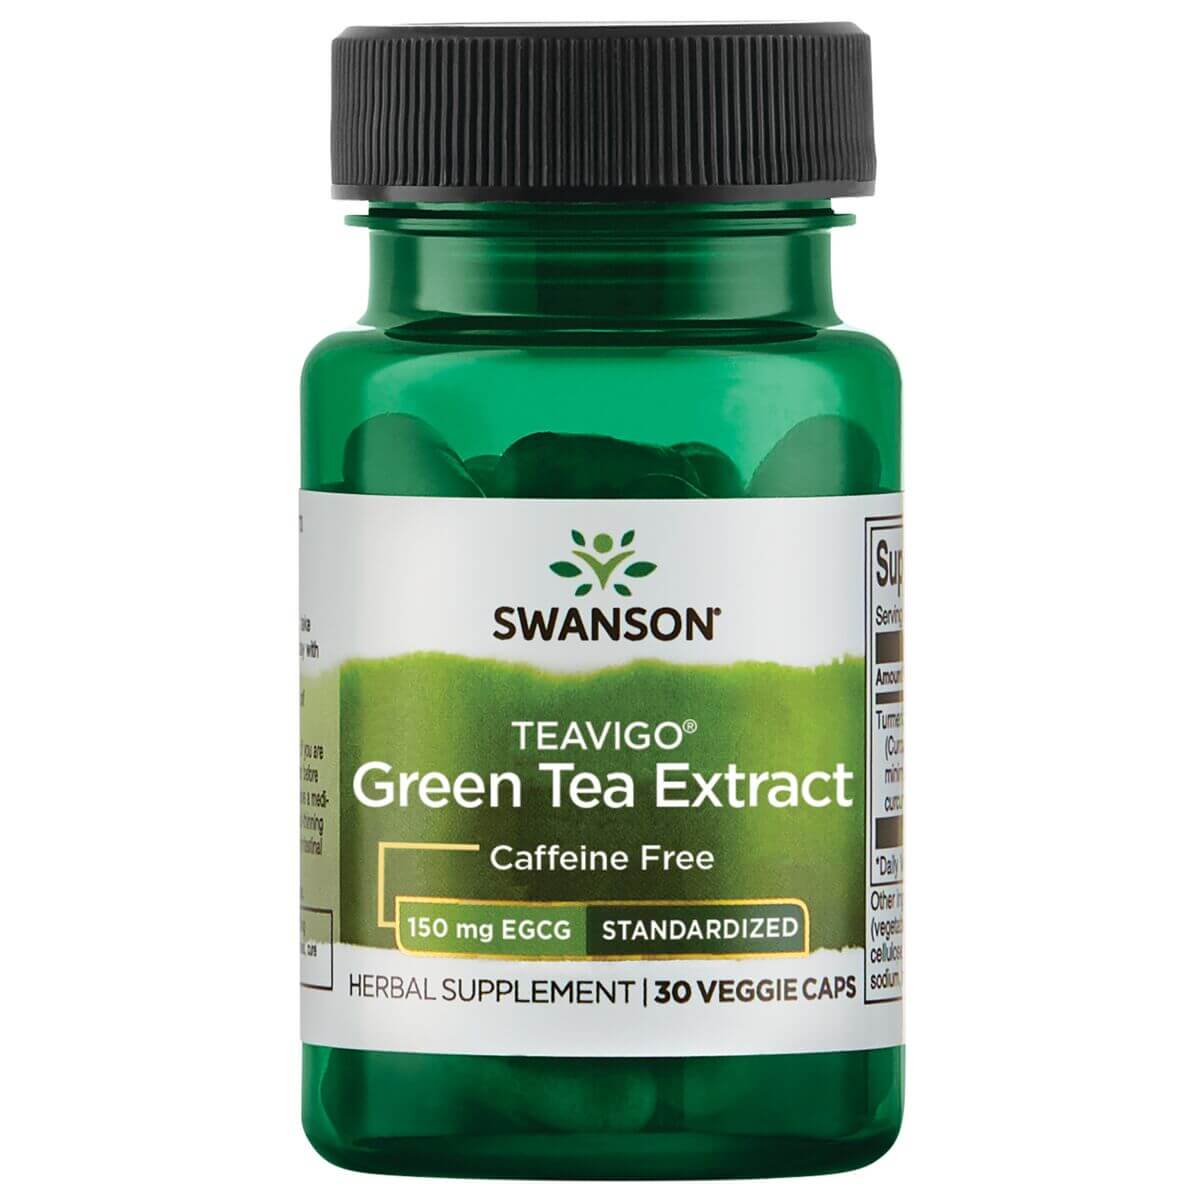 TeaVigo Green Tea Extract 150mg EGCG - 30 VCaps